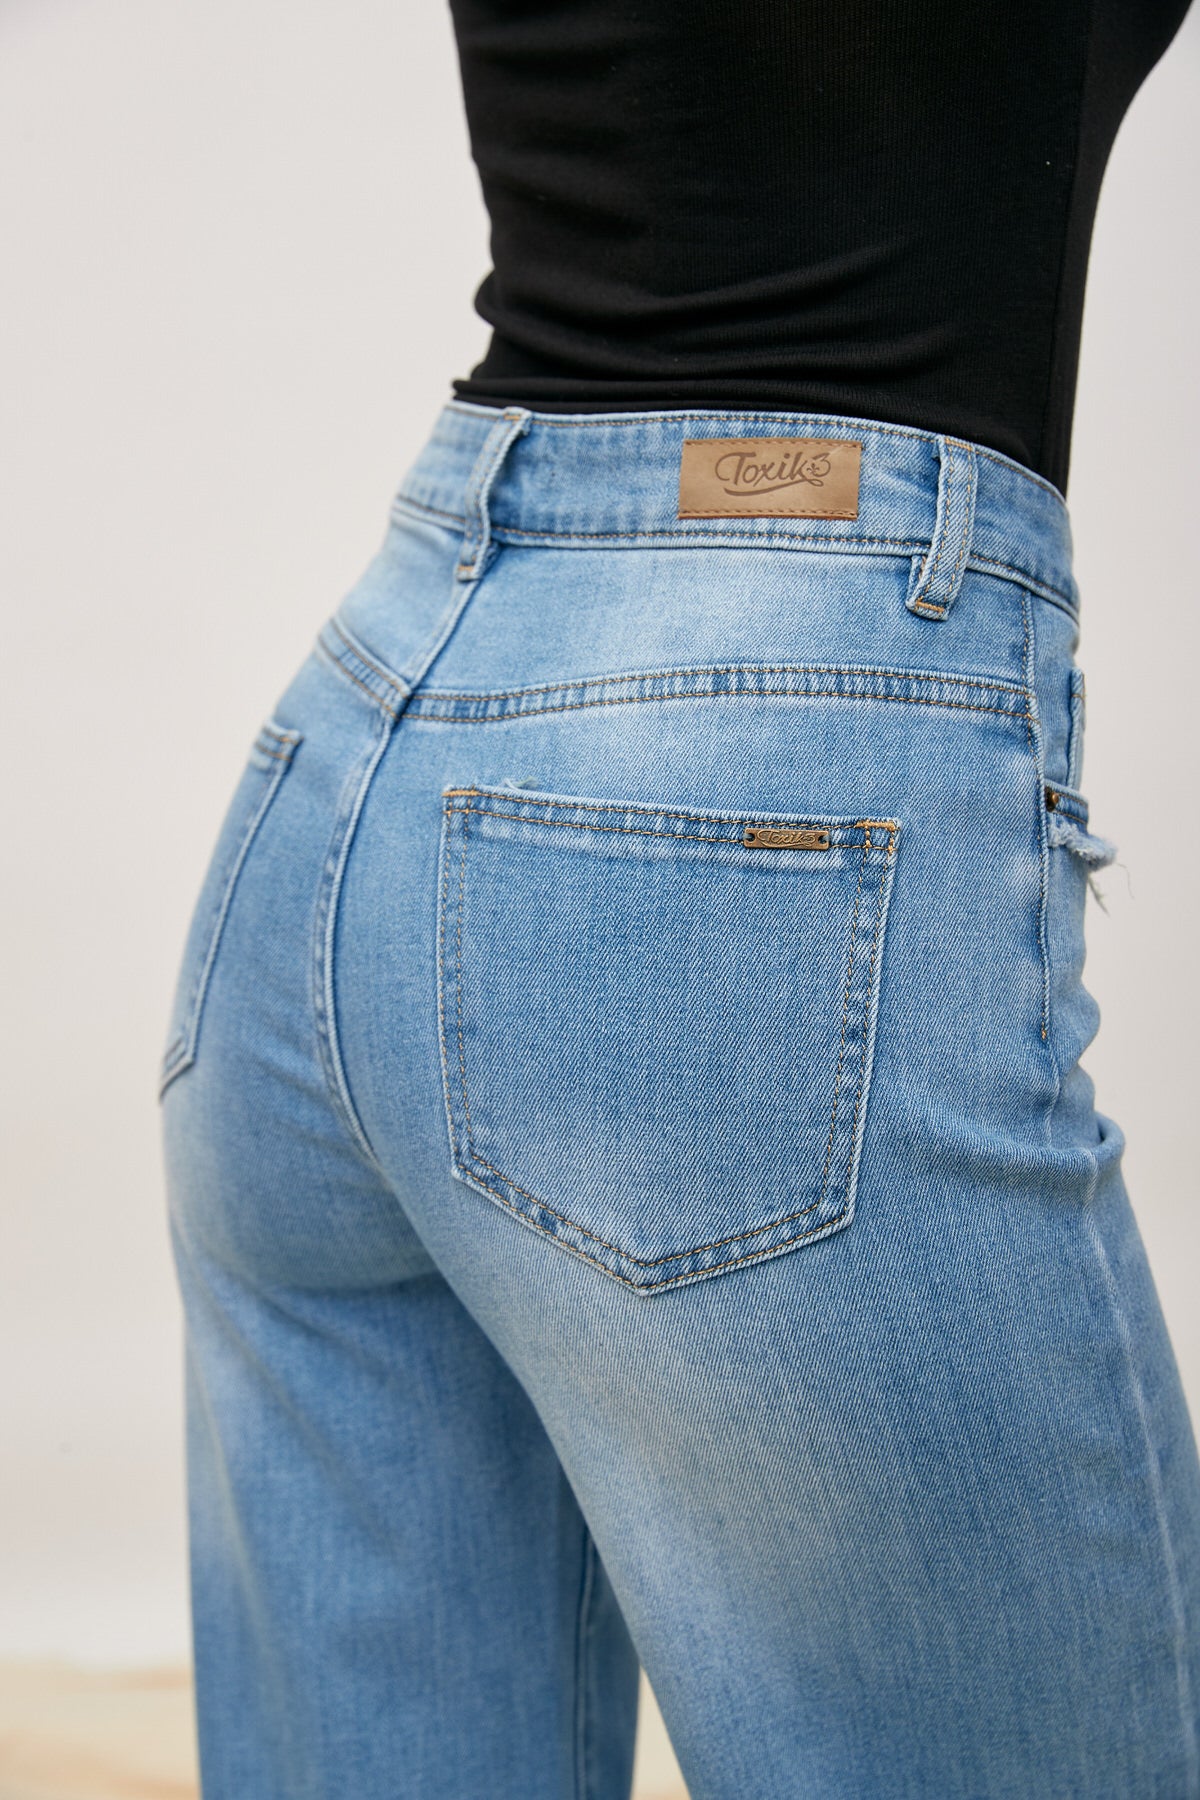 Jeans envejecido de jeans - Hazel